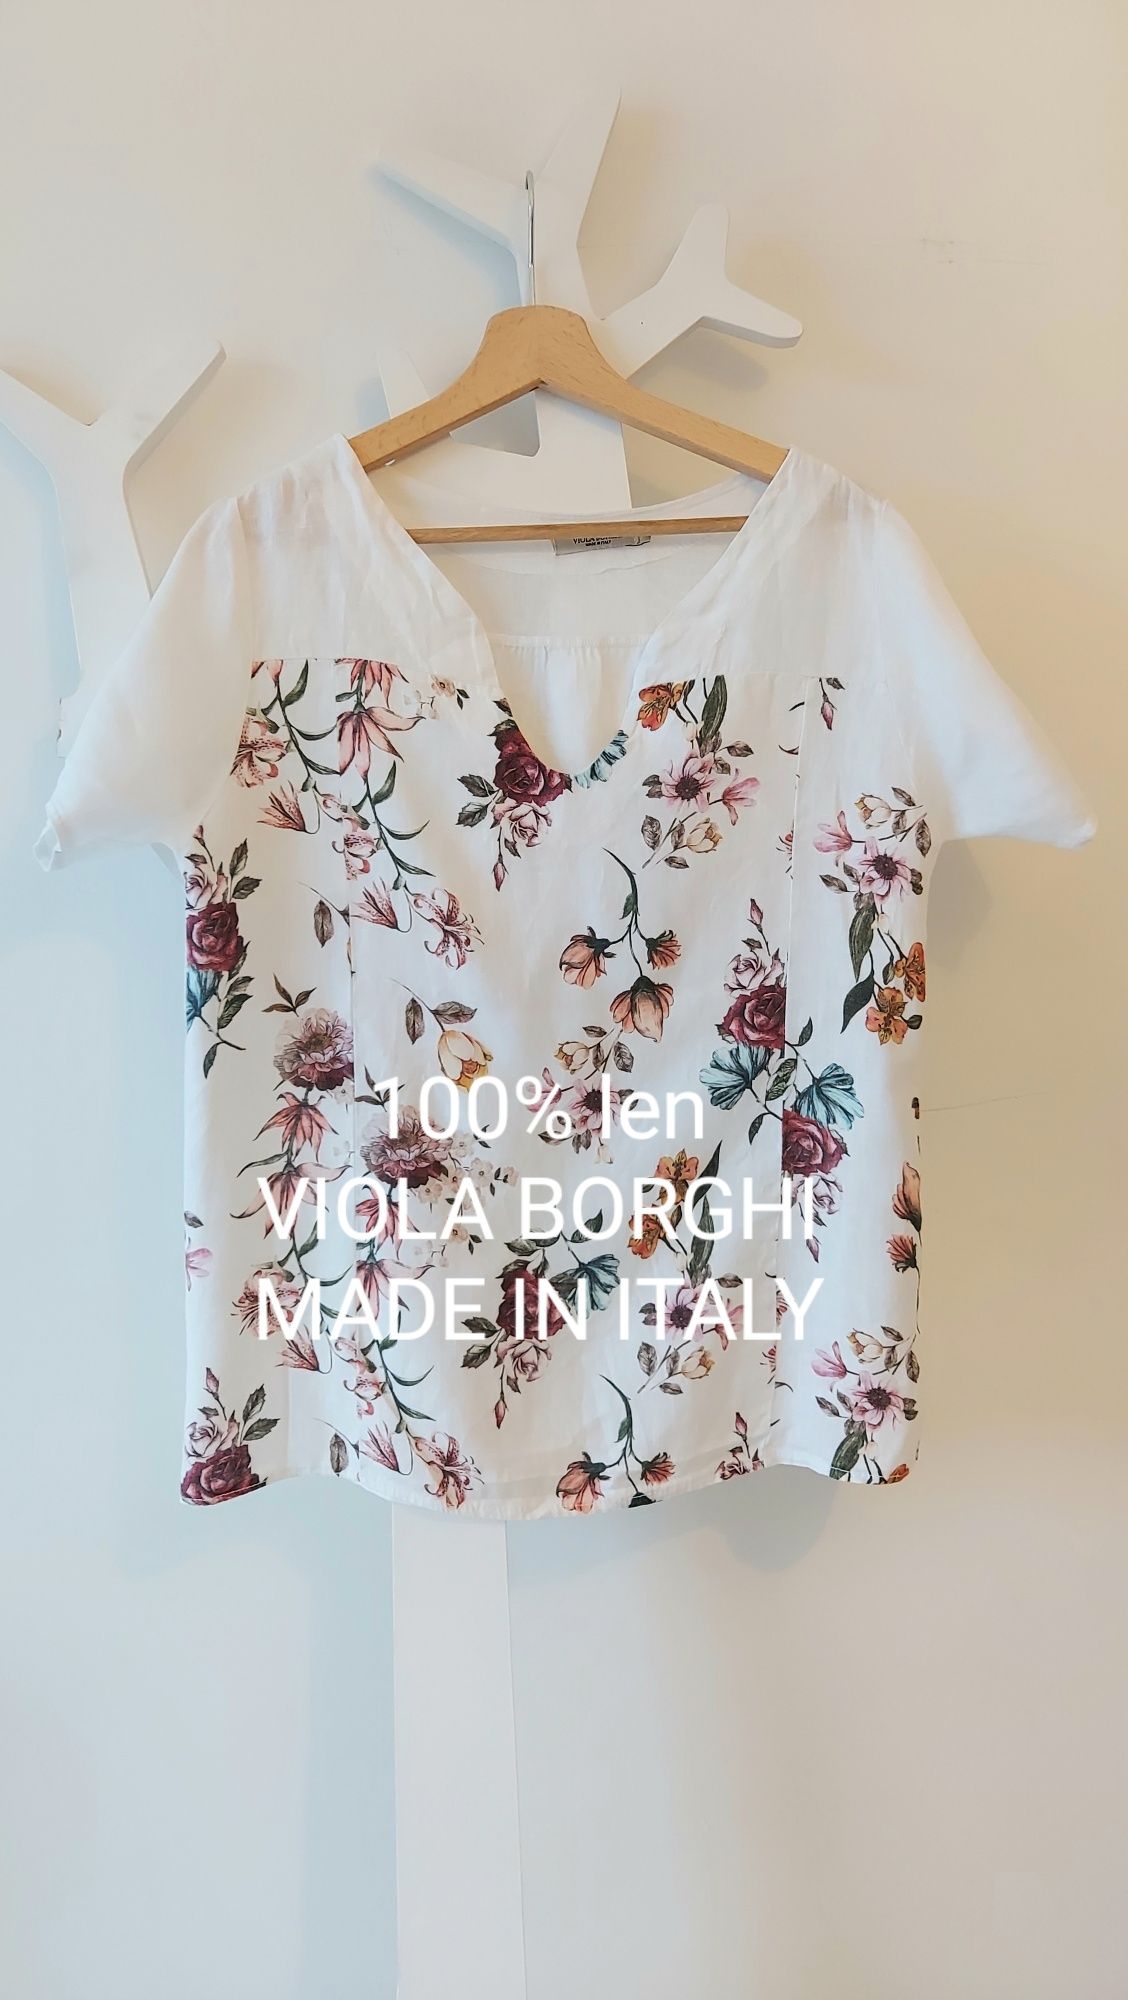 Viola Borghi Bluzka 100% len lato roz S madei in Italy